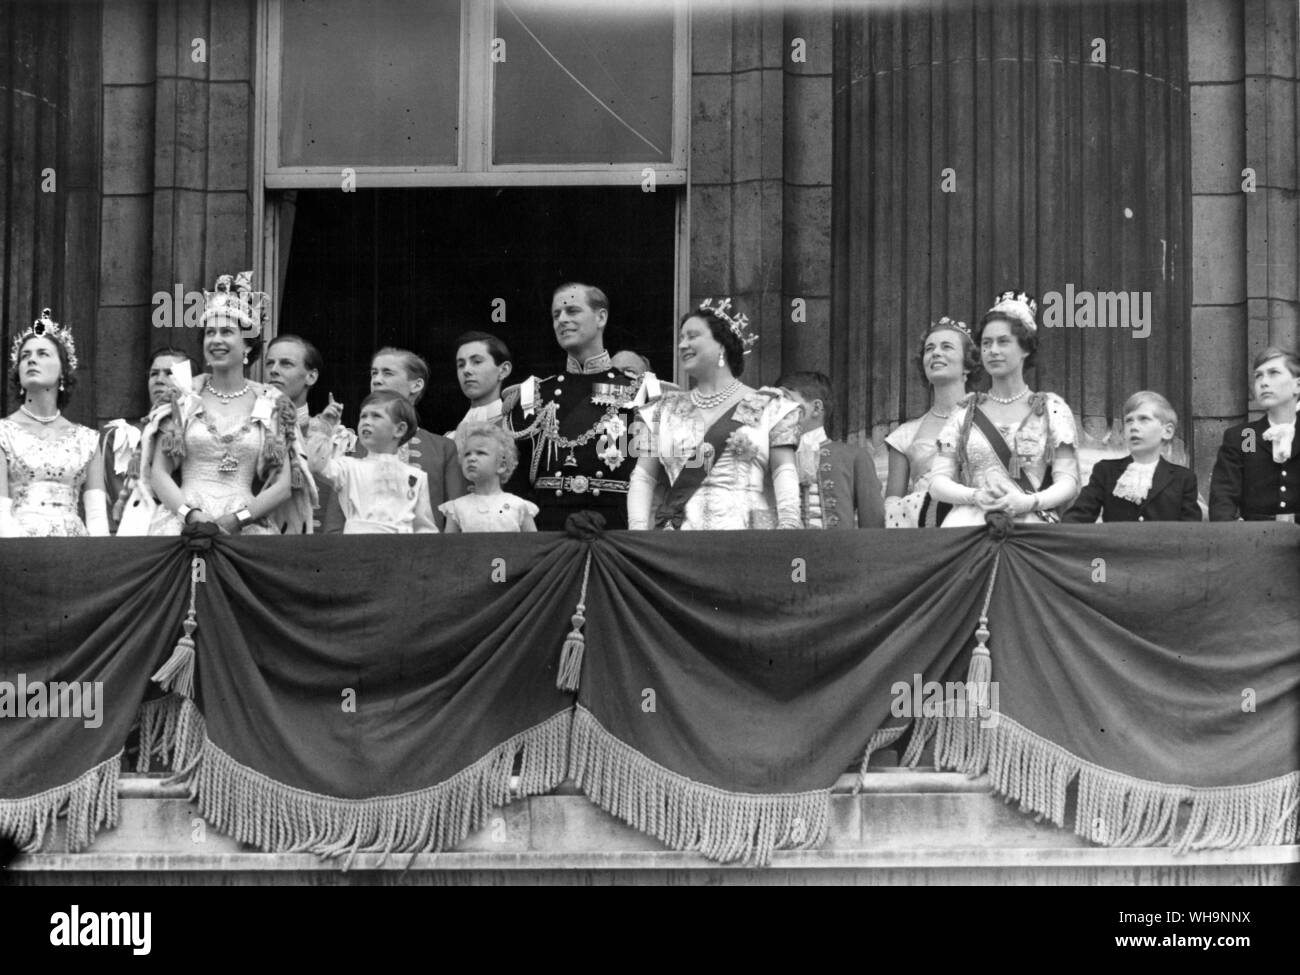 2 giugno 1953|: Queen Elizabeth prende il R.A.F salutate sul balcone a Buckingham Palace dopo l'incoronazione. Con la famiglia reale. Foto Stock